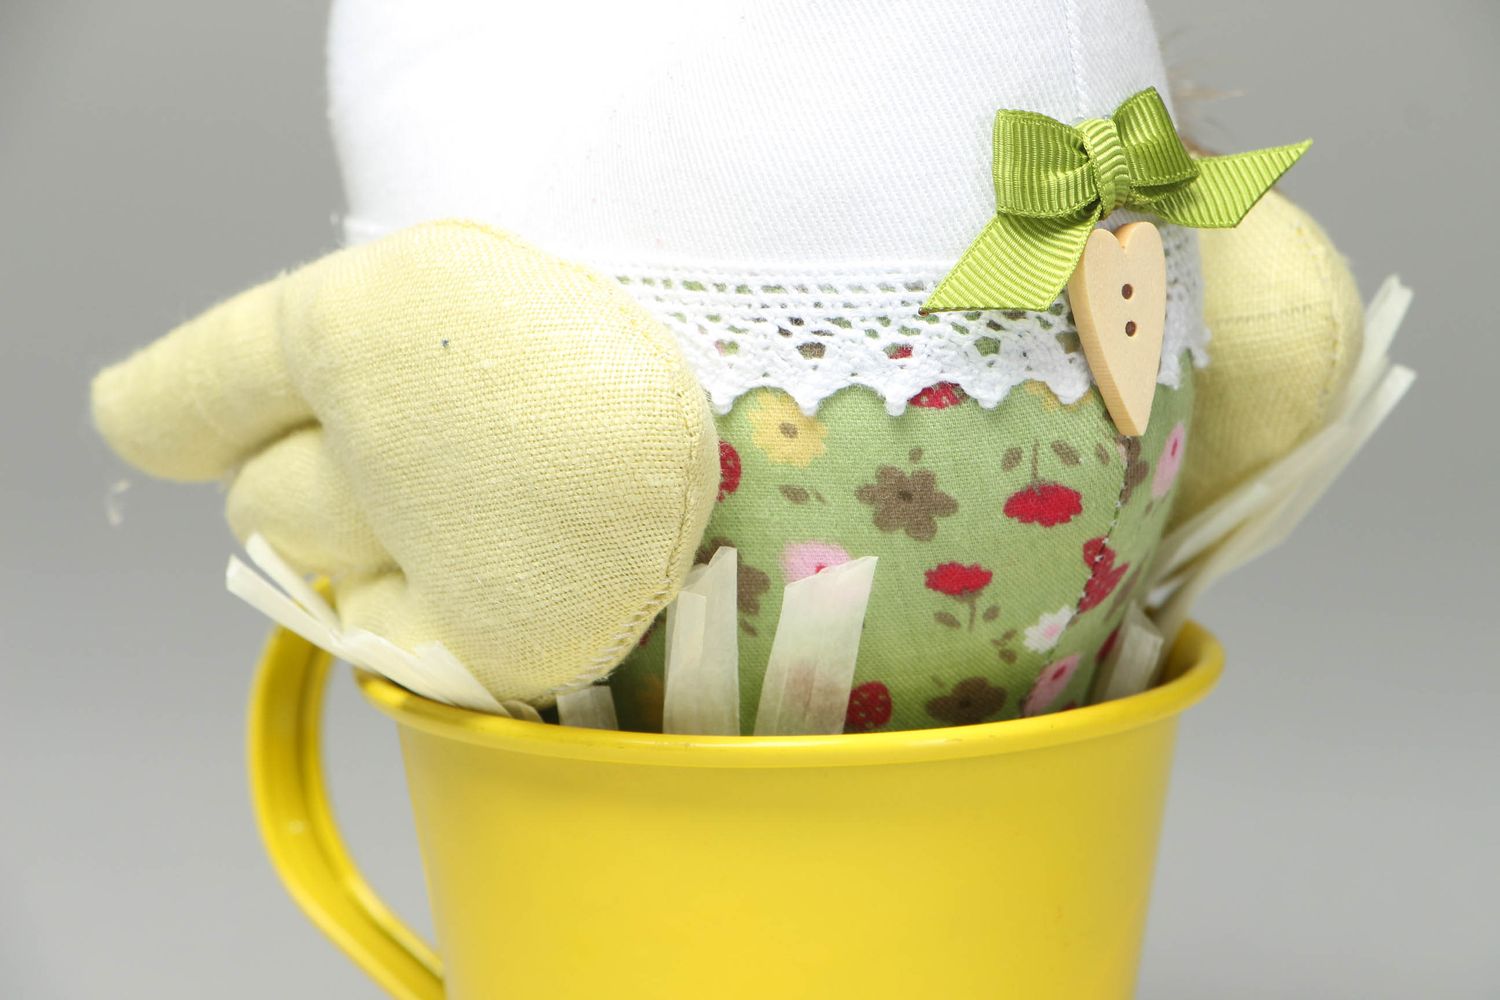 Мягкая интерьерная игрушка Курочка в желтой чашке фото 2